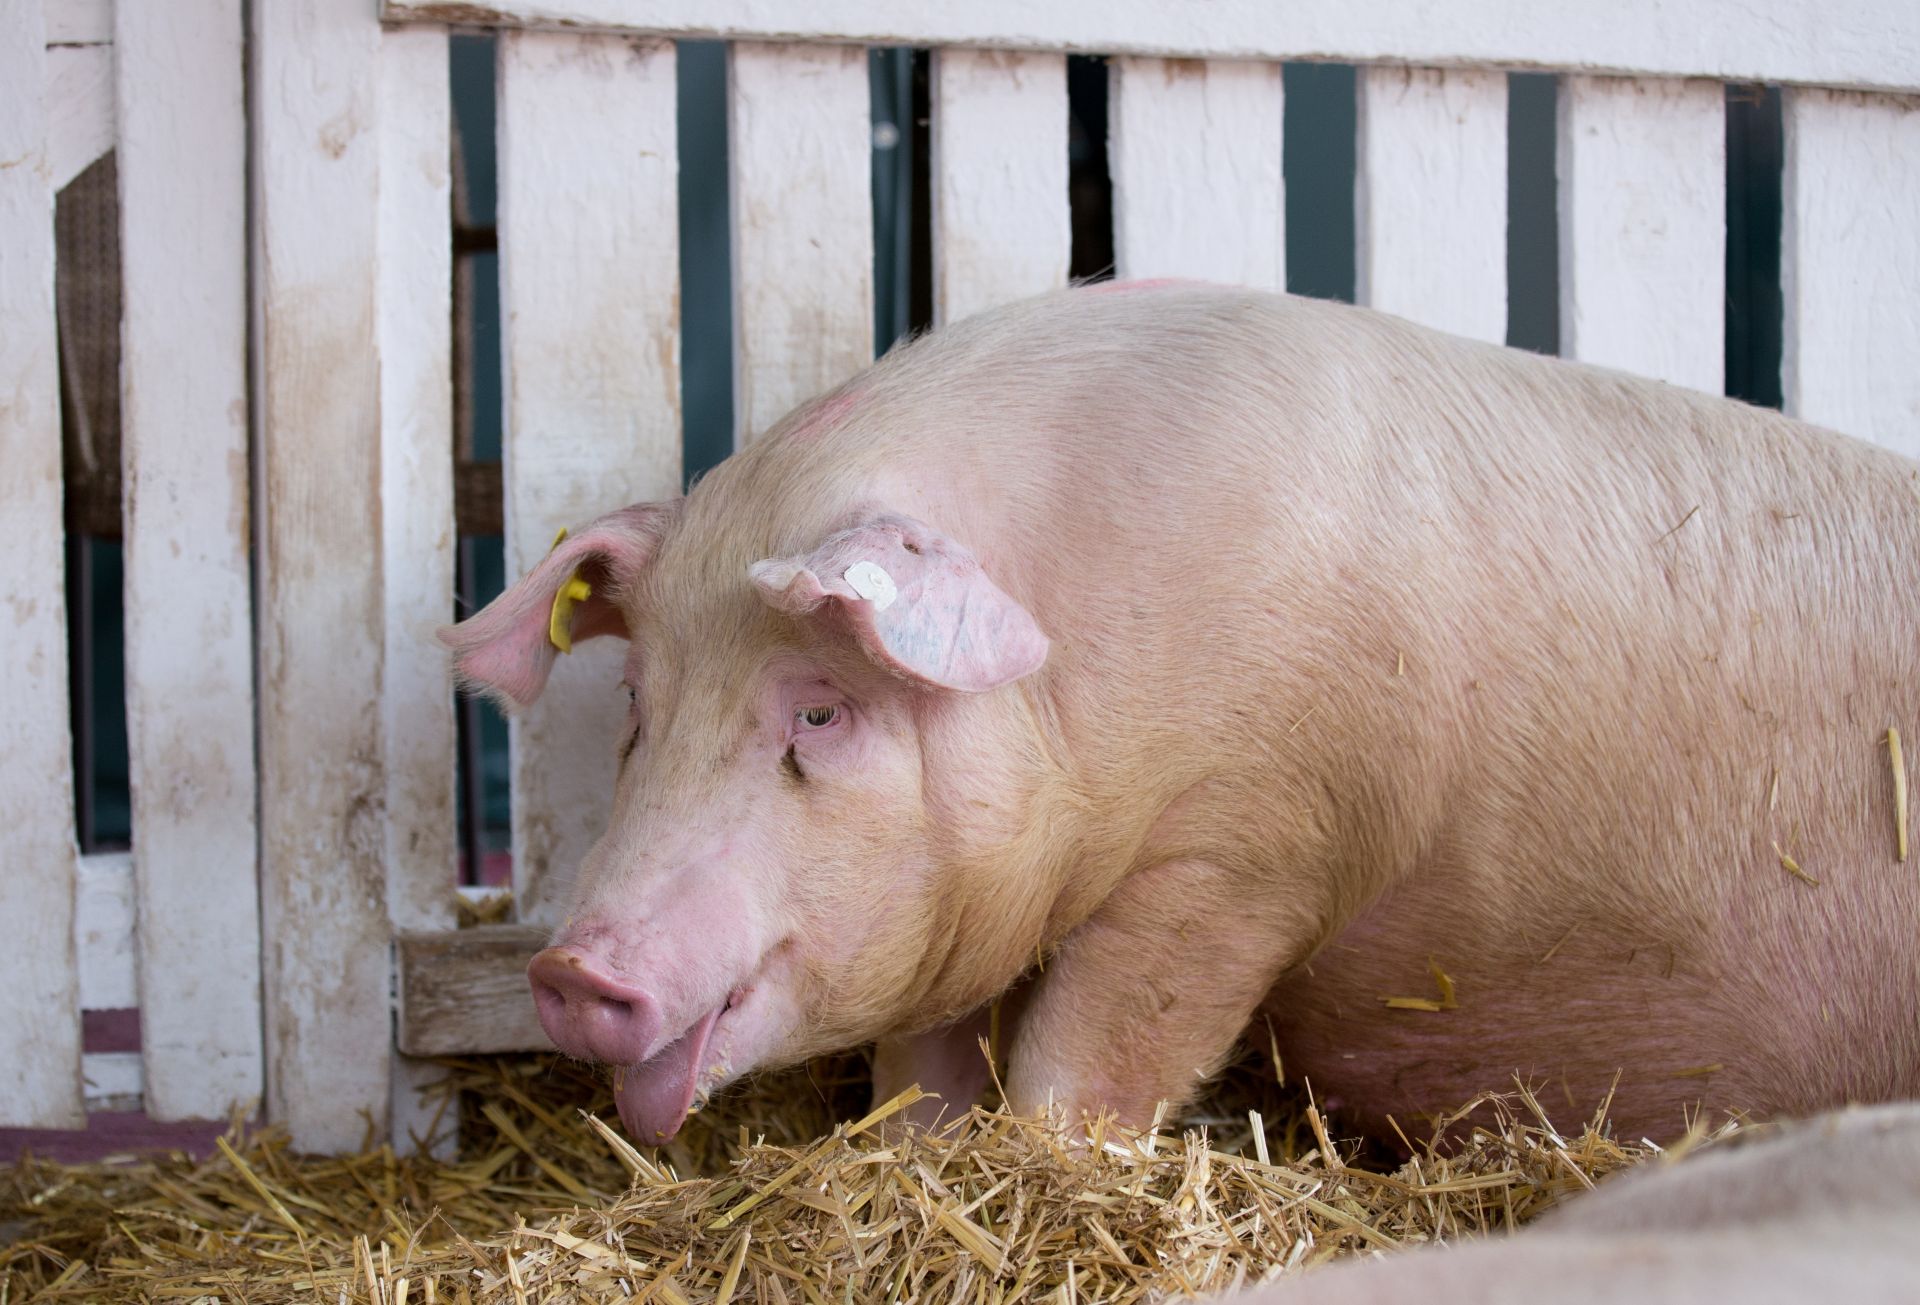 Нови случаи на Африканска чума по свинете се появиха в 3 области през последните дни - Благоевград, Кърджали и Ловеч